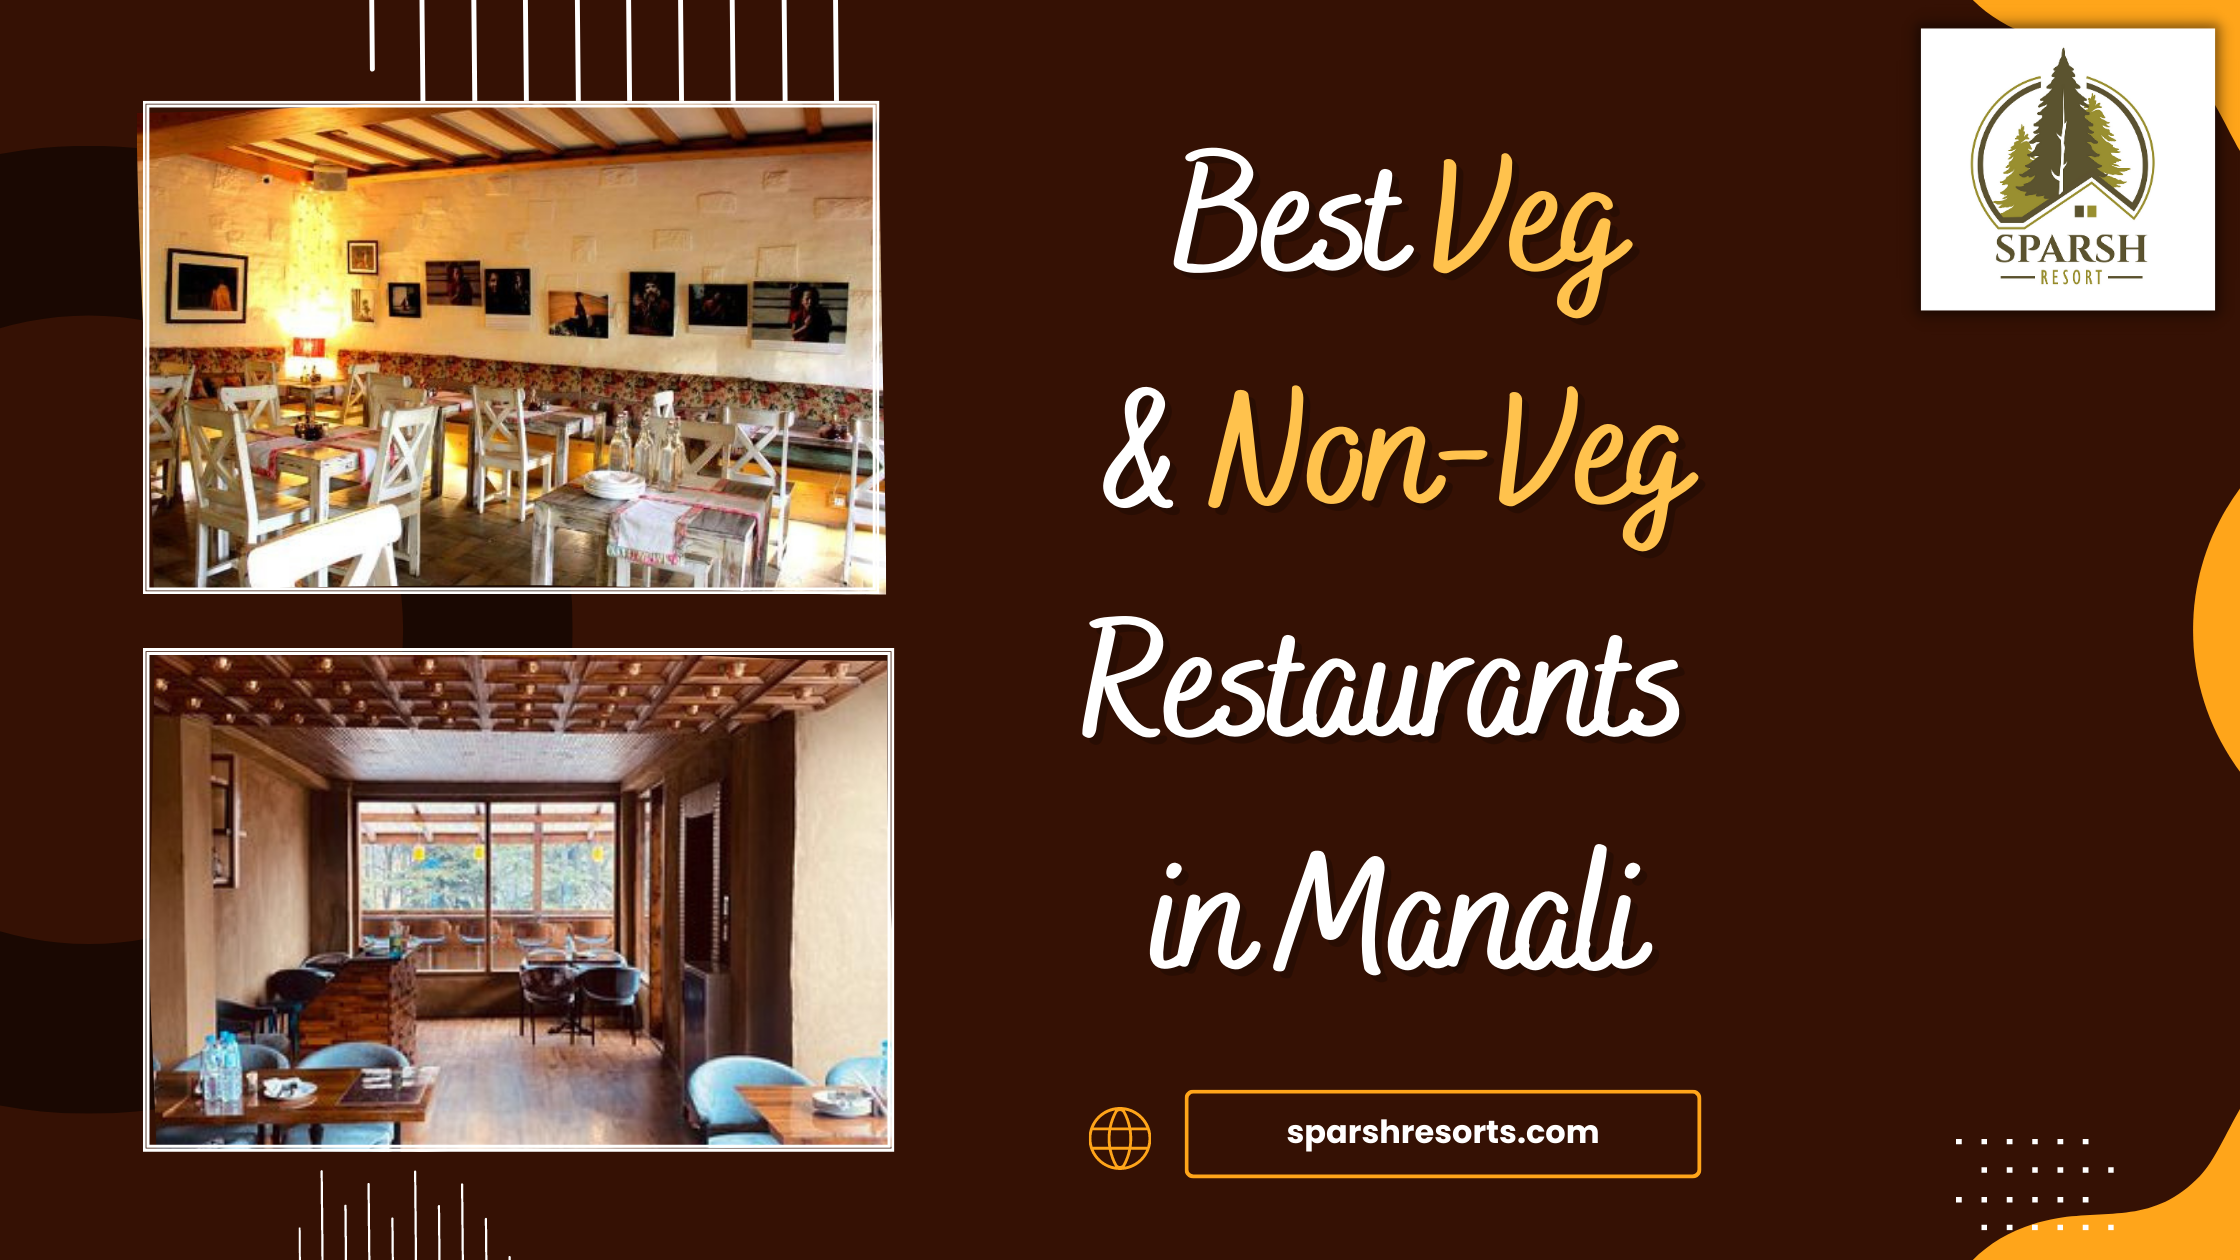 Best Veg & Non-Veg Restaurants in Manali - Sparsh Resort